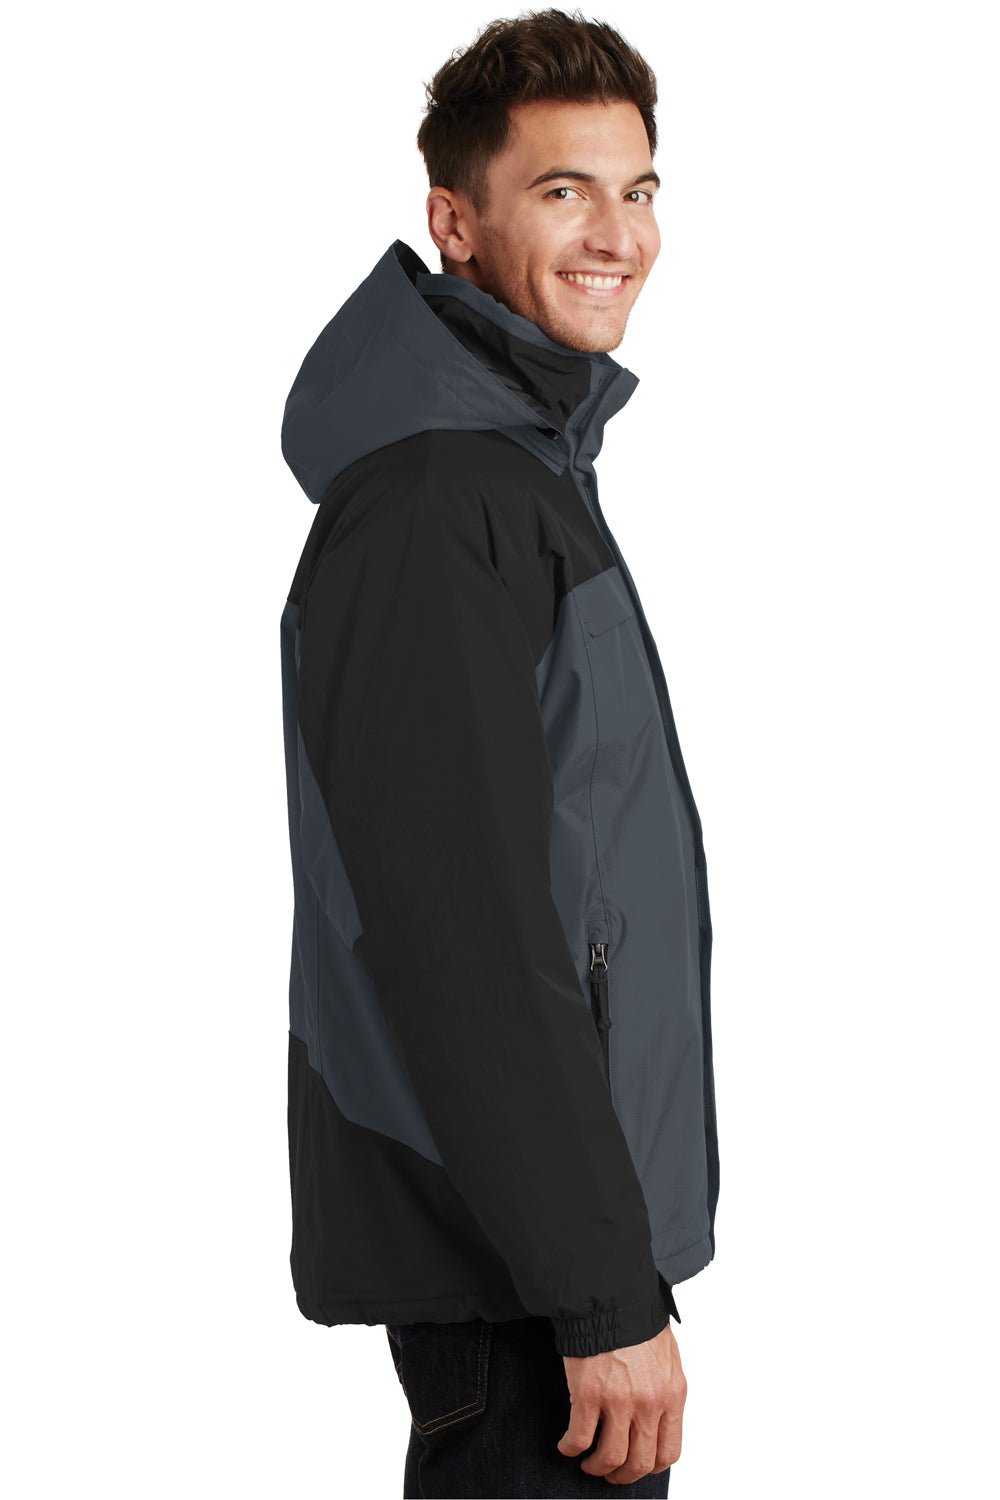 Port Authority J792 Mens Nootka Waterproof Full Zip Hooded Jacket Graphite Grey/Black Side